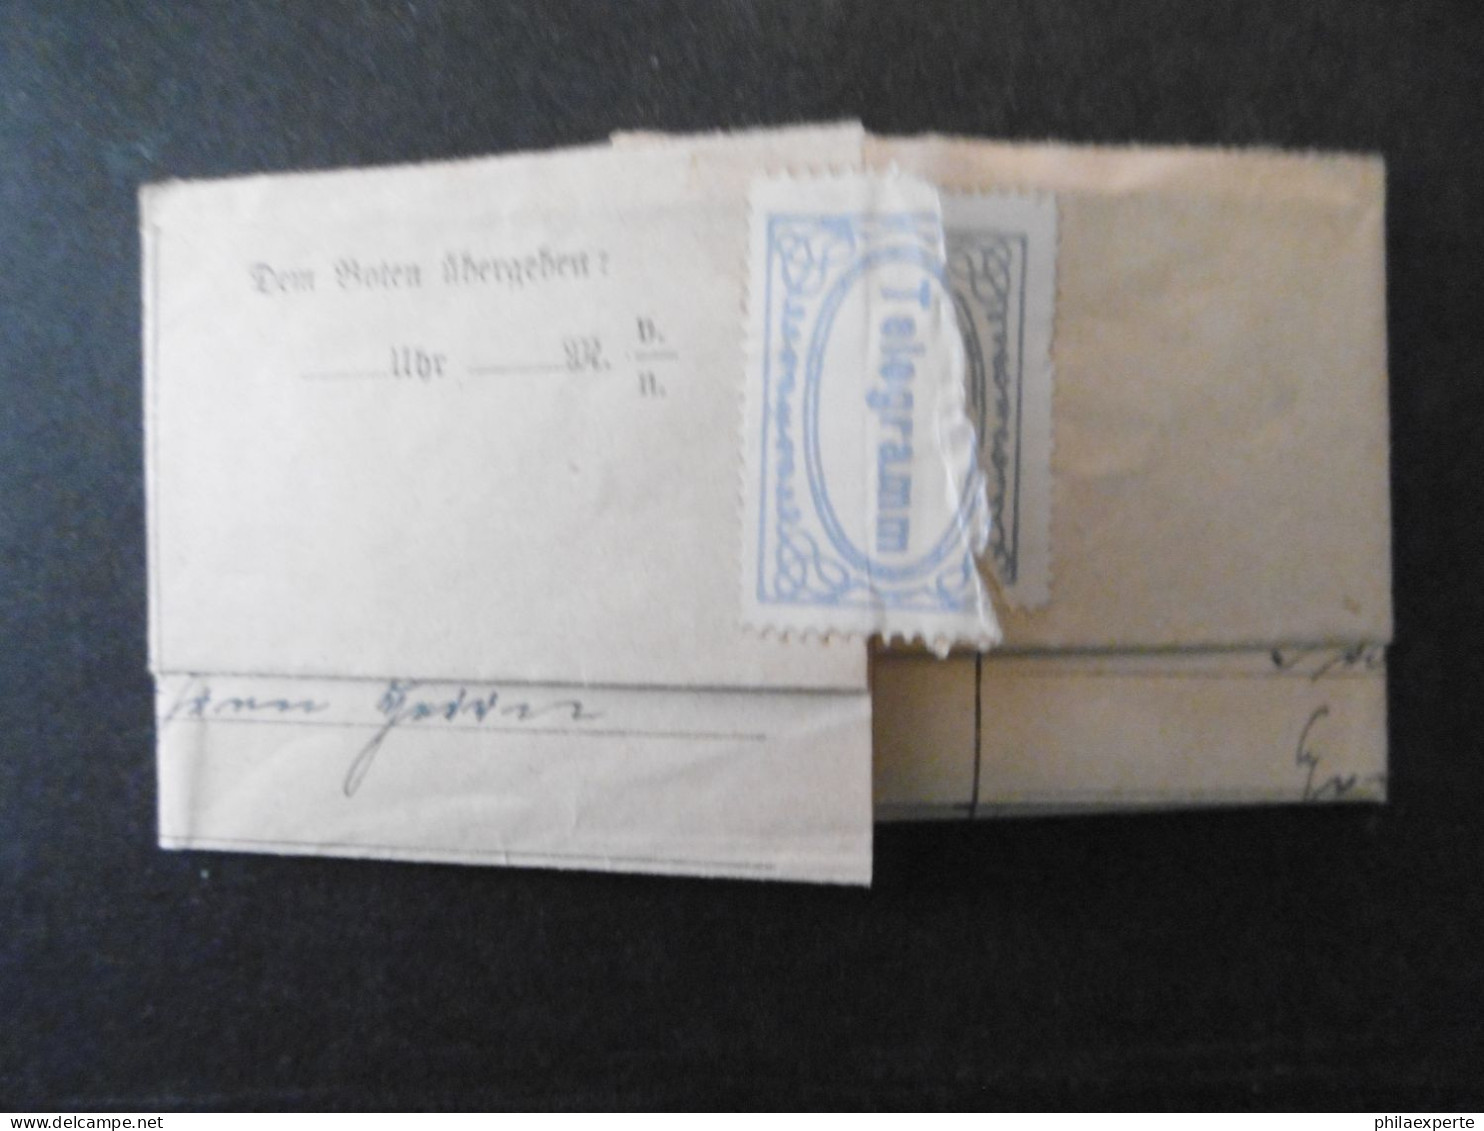 Bayern Telegramm(Marke üblich Geteilt) 1914 Von Münchenan Präparator Grönninger-selten - Covers & Documents